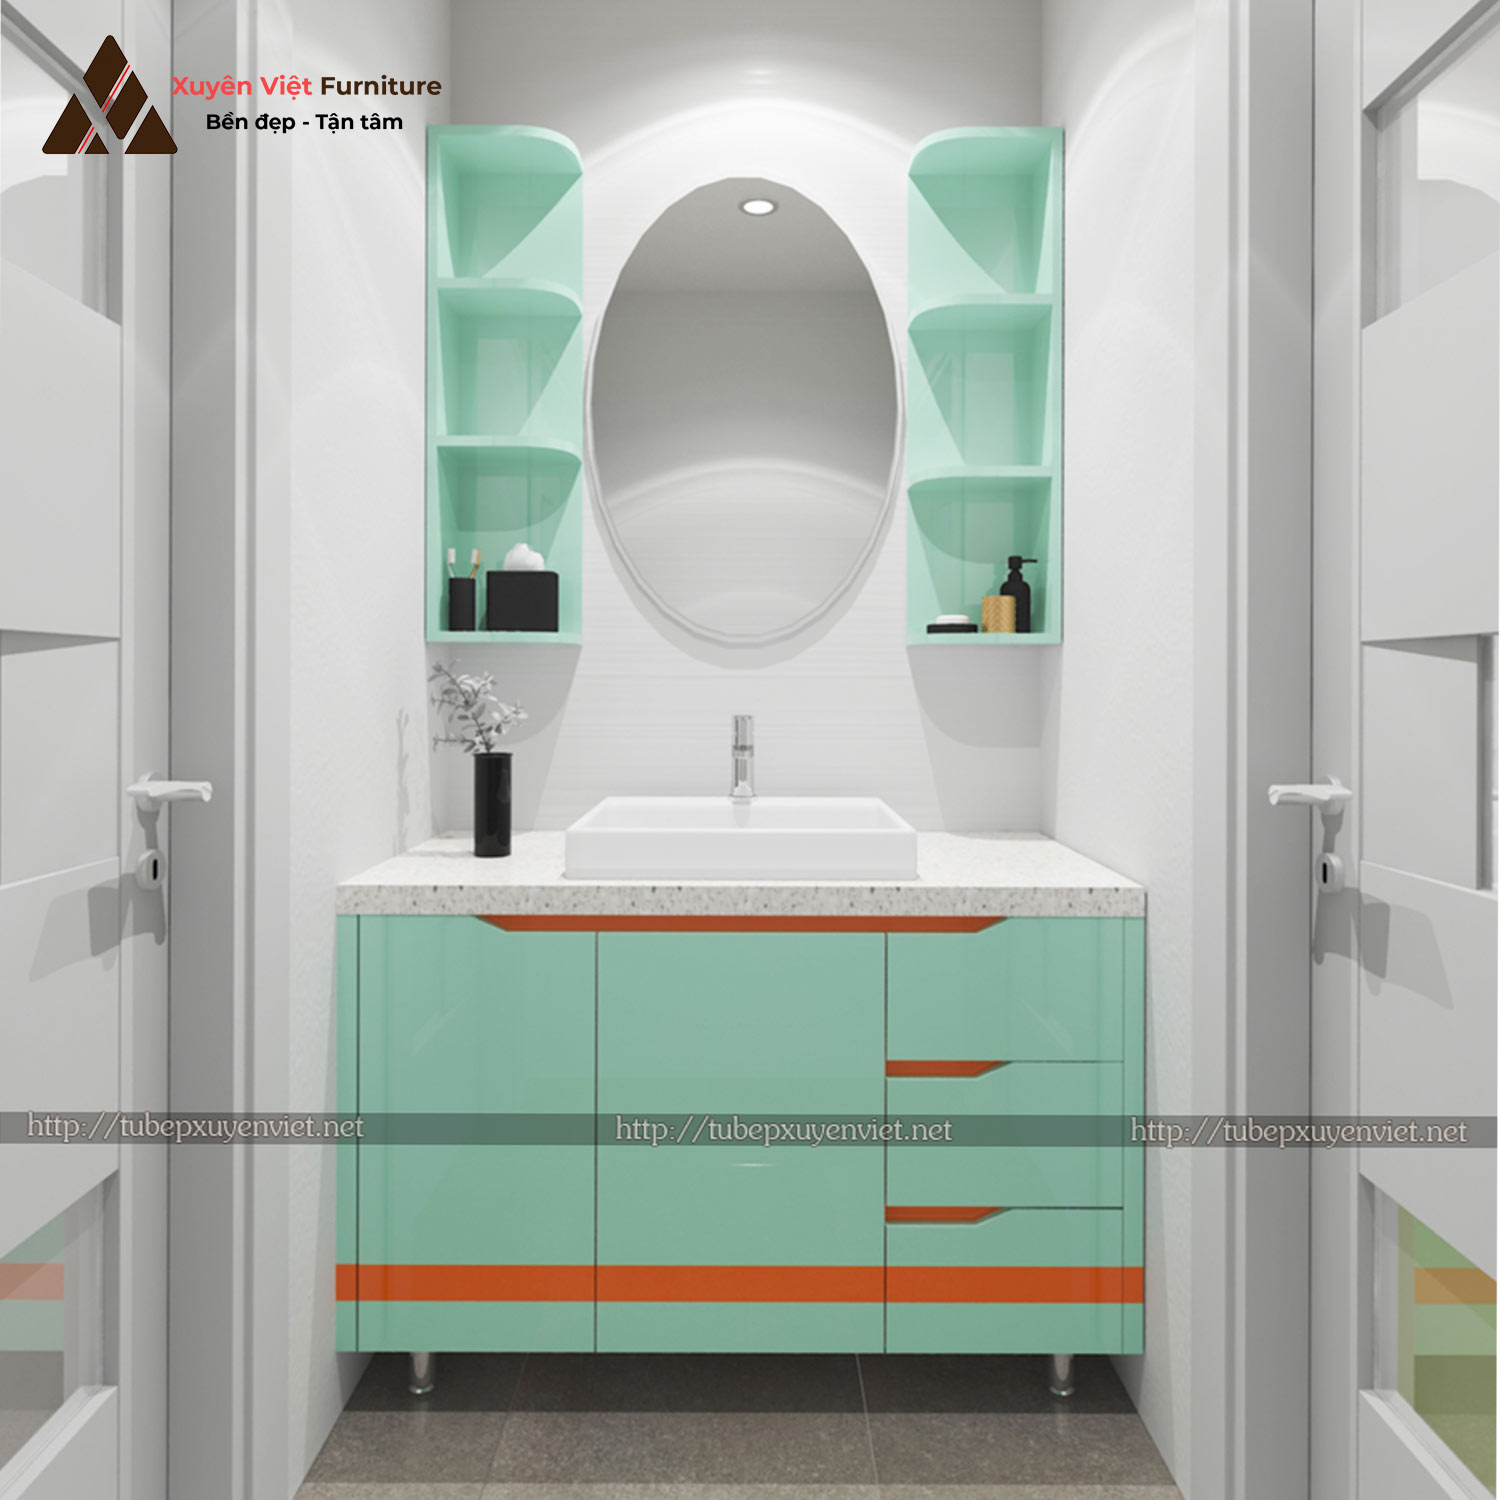 Hình ảnh mẫu thiết kế bộ tủ lavabo chân đứng XVL692 thứ nhất nhà Chị Thảo